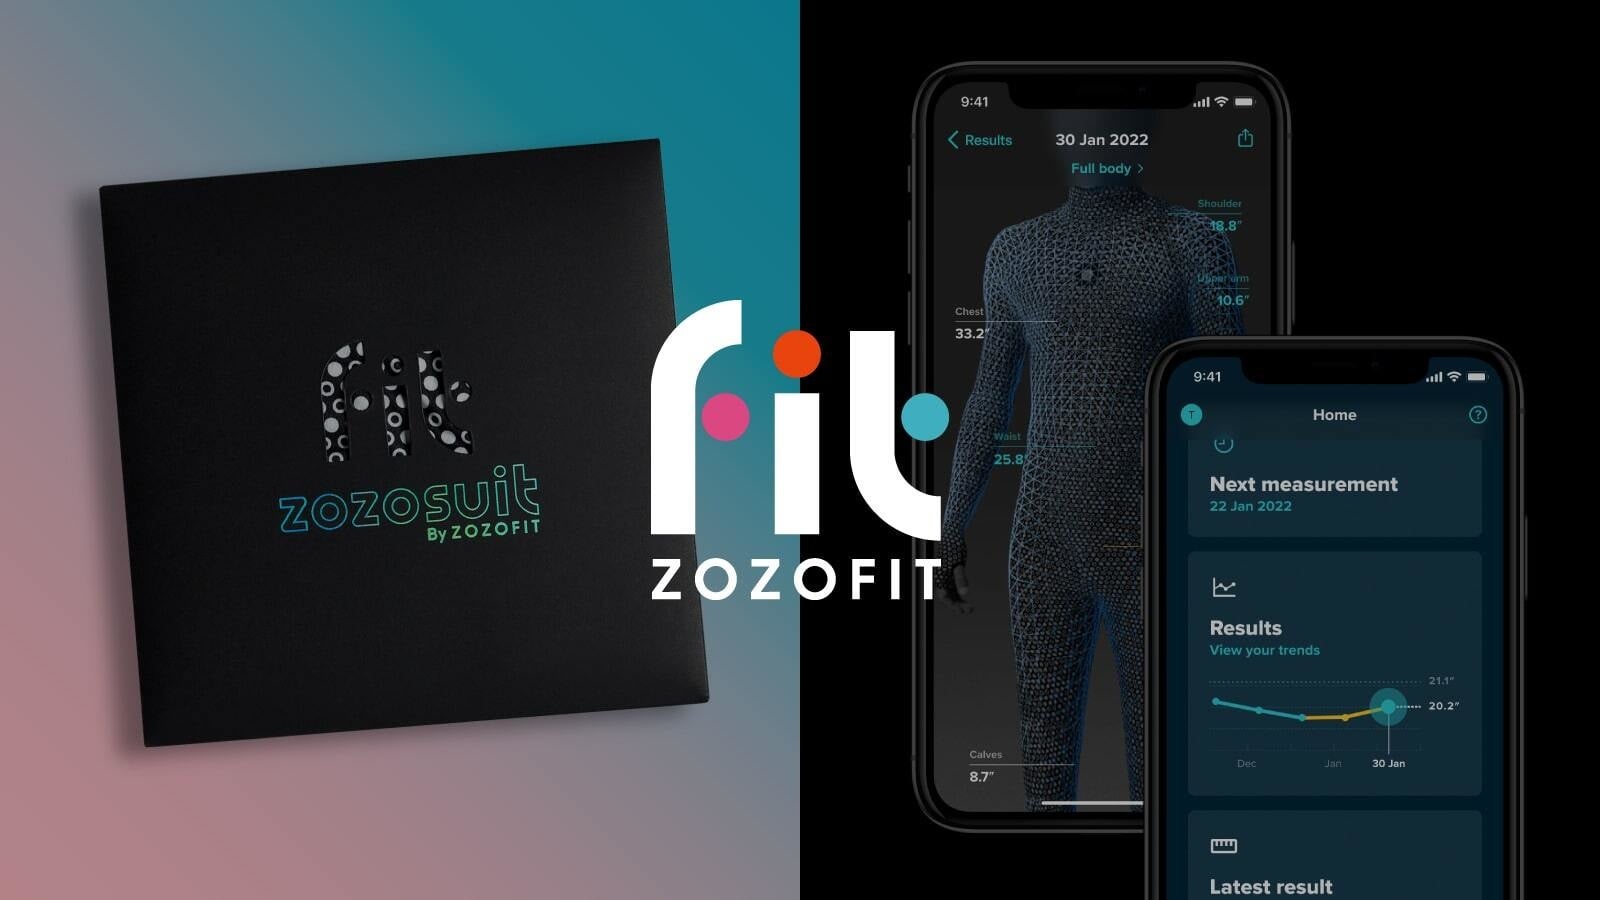 ZOZOSUITの体型計測テクノロジーを活用した新事業ボディーマネジメントサービス「ZOZOFIT」を米国で提供開始